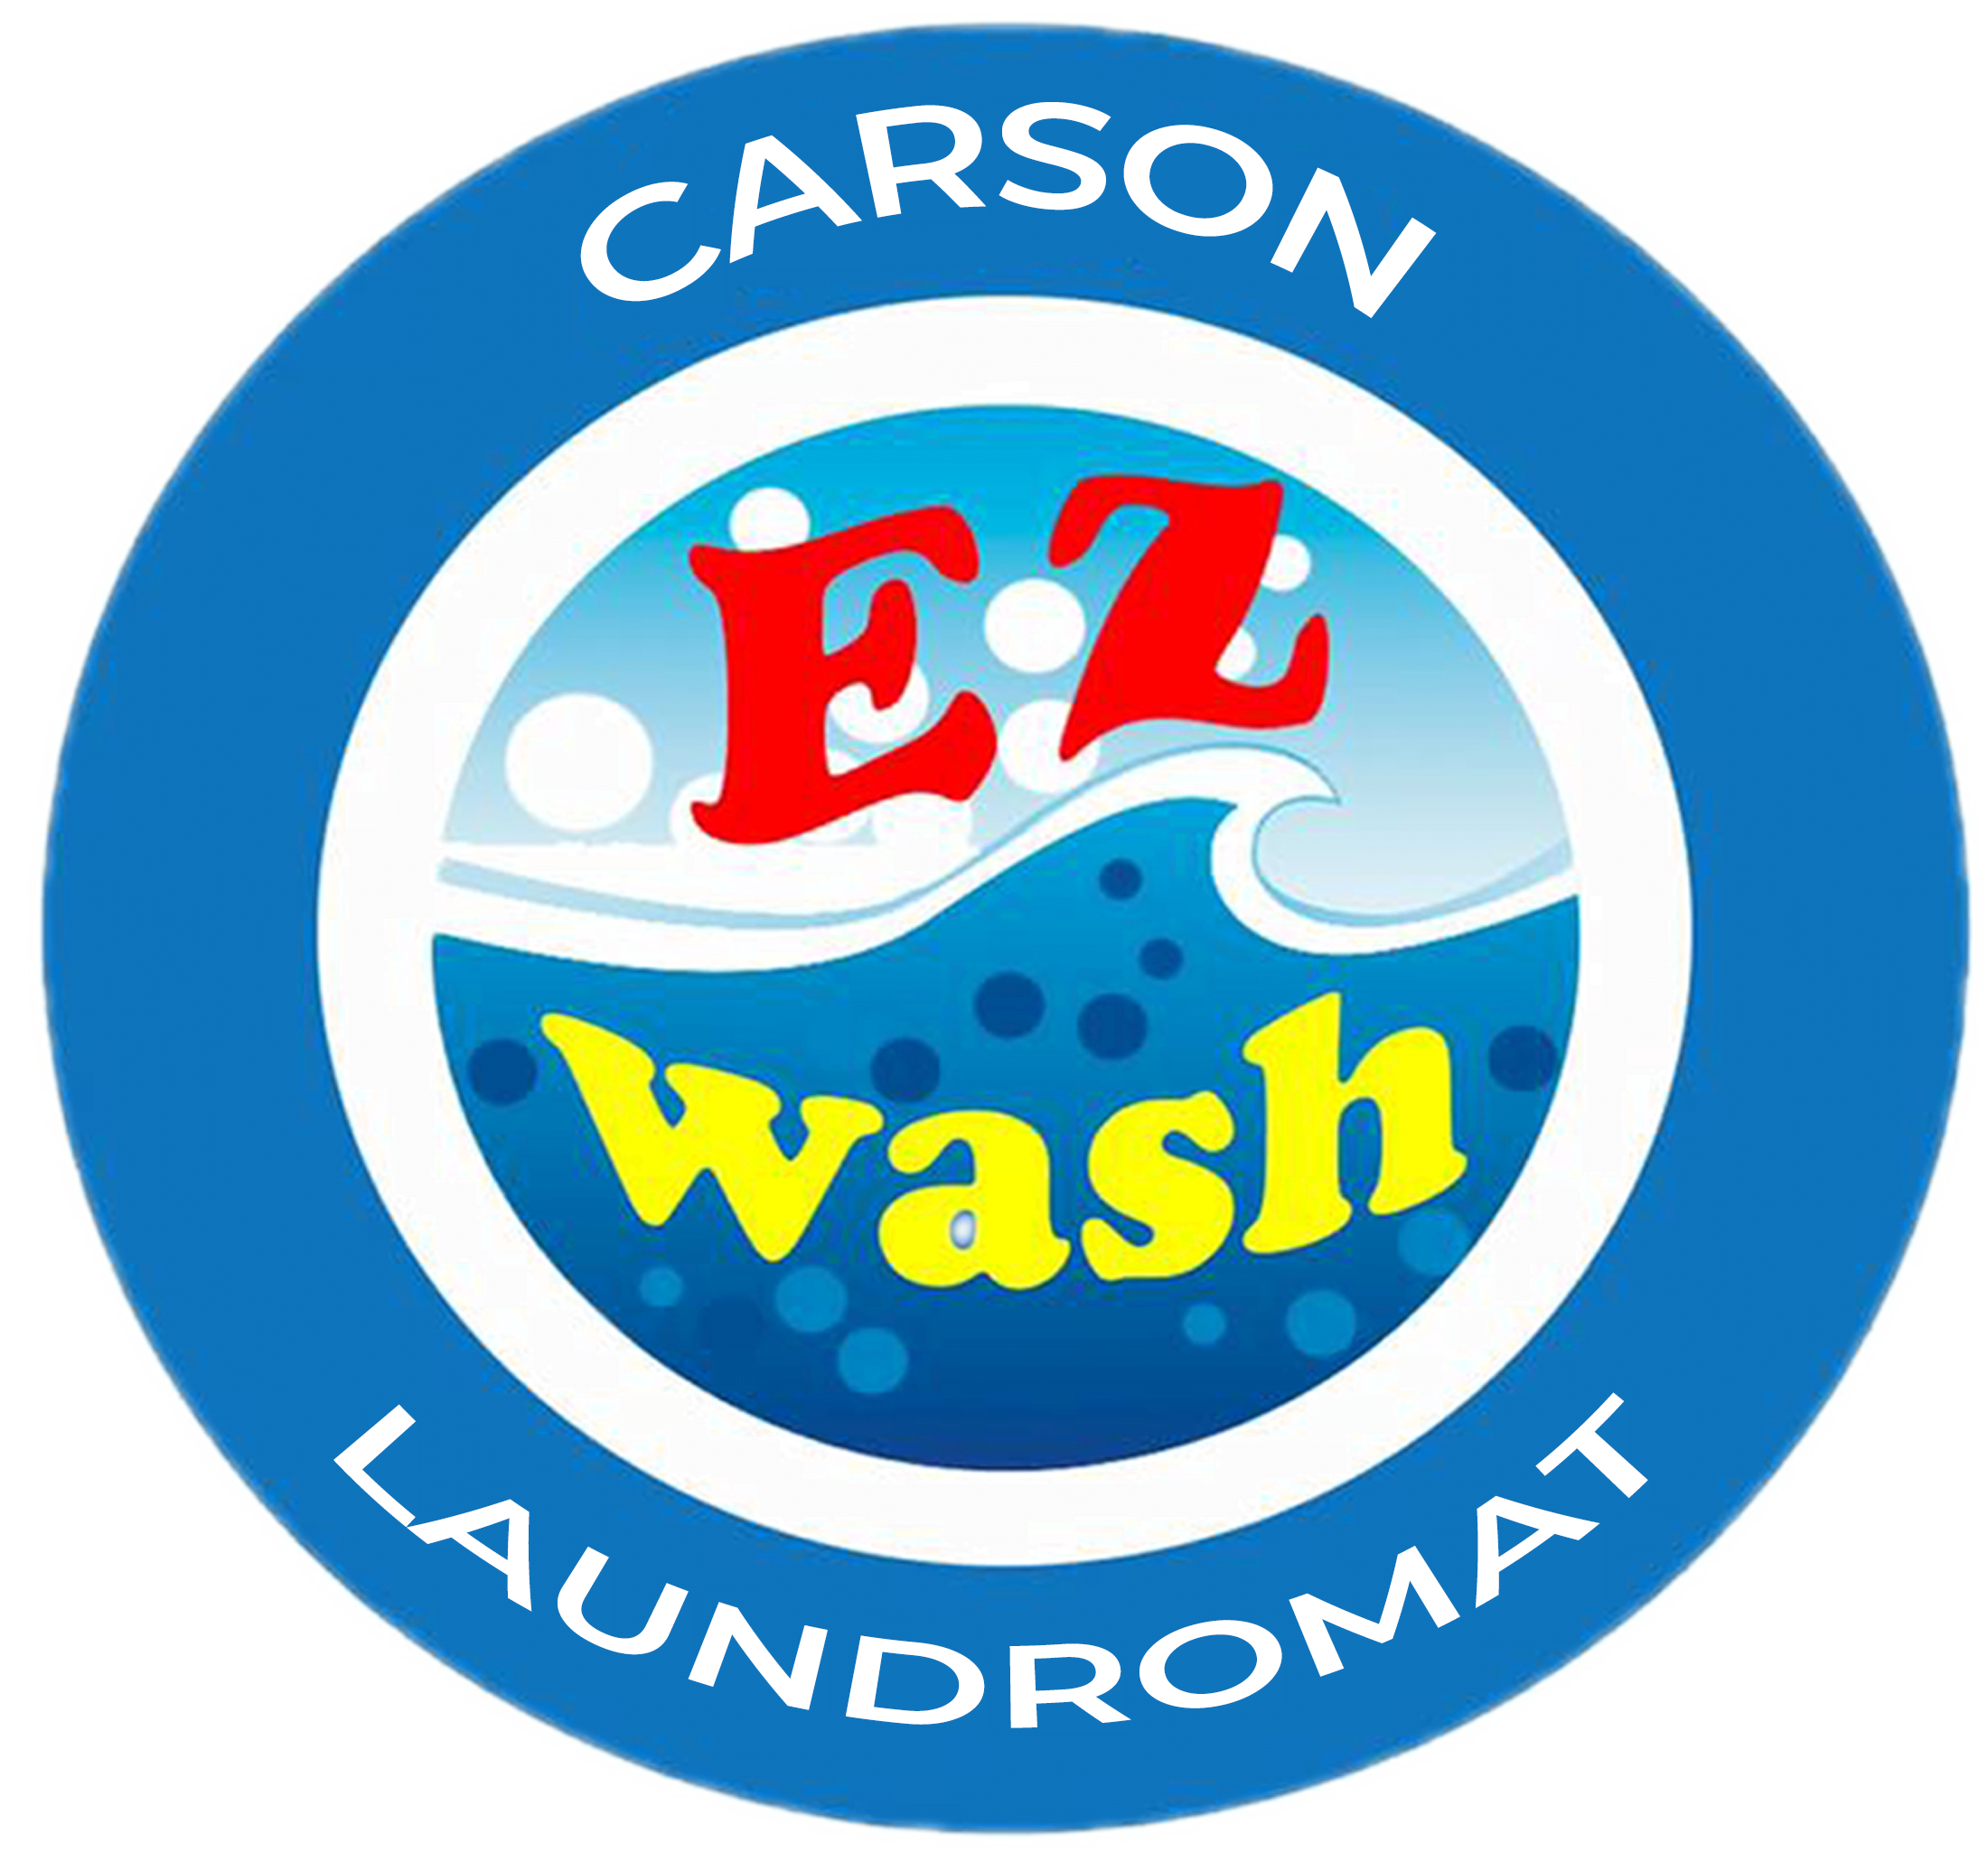 teams-carson-ez-wash-laundromat